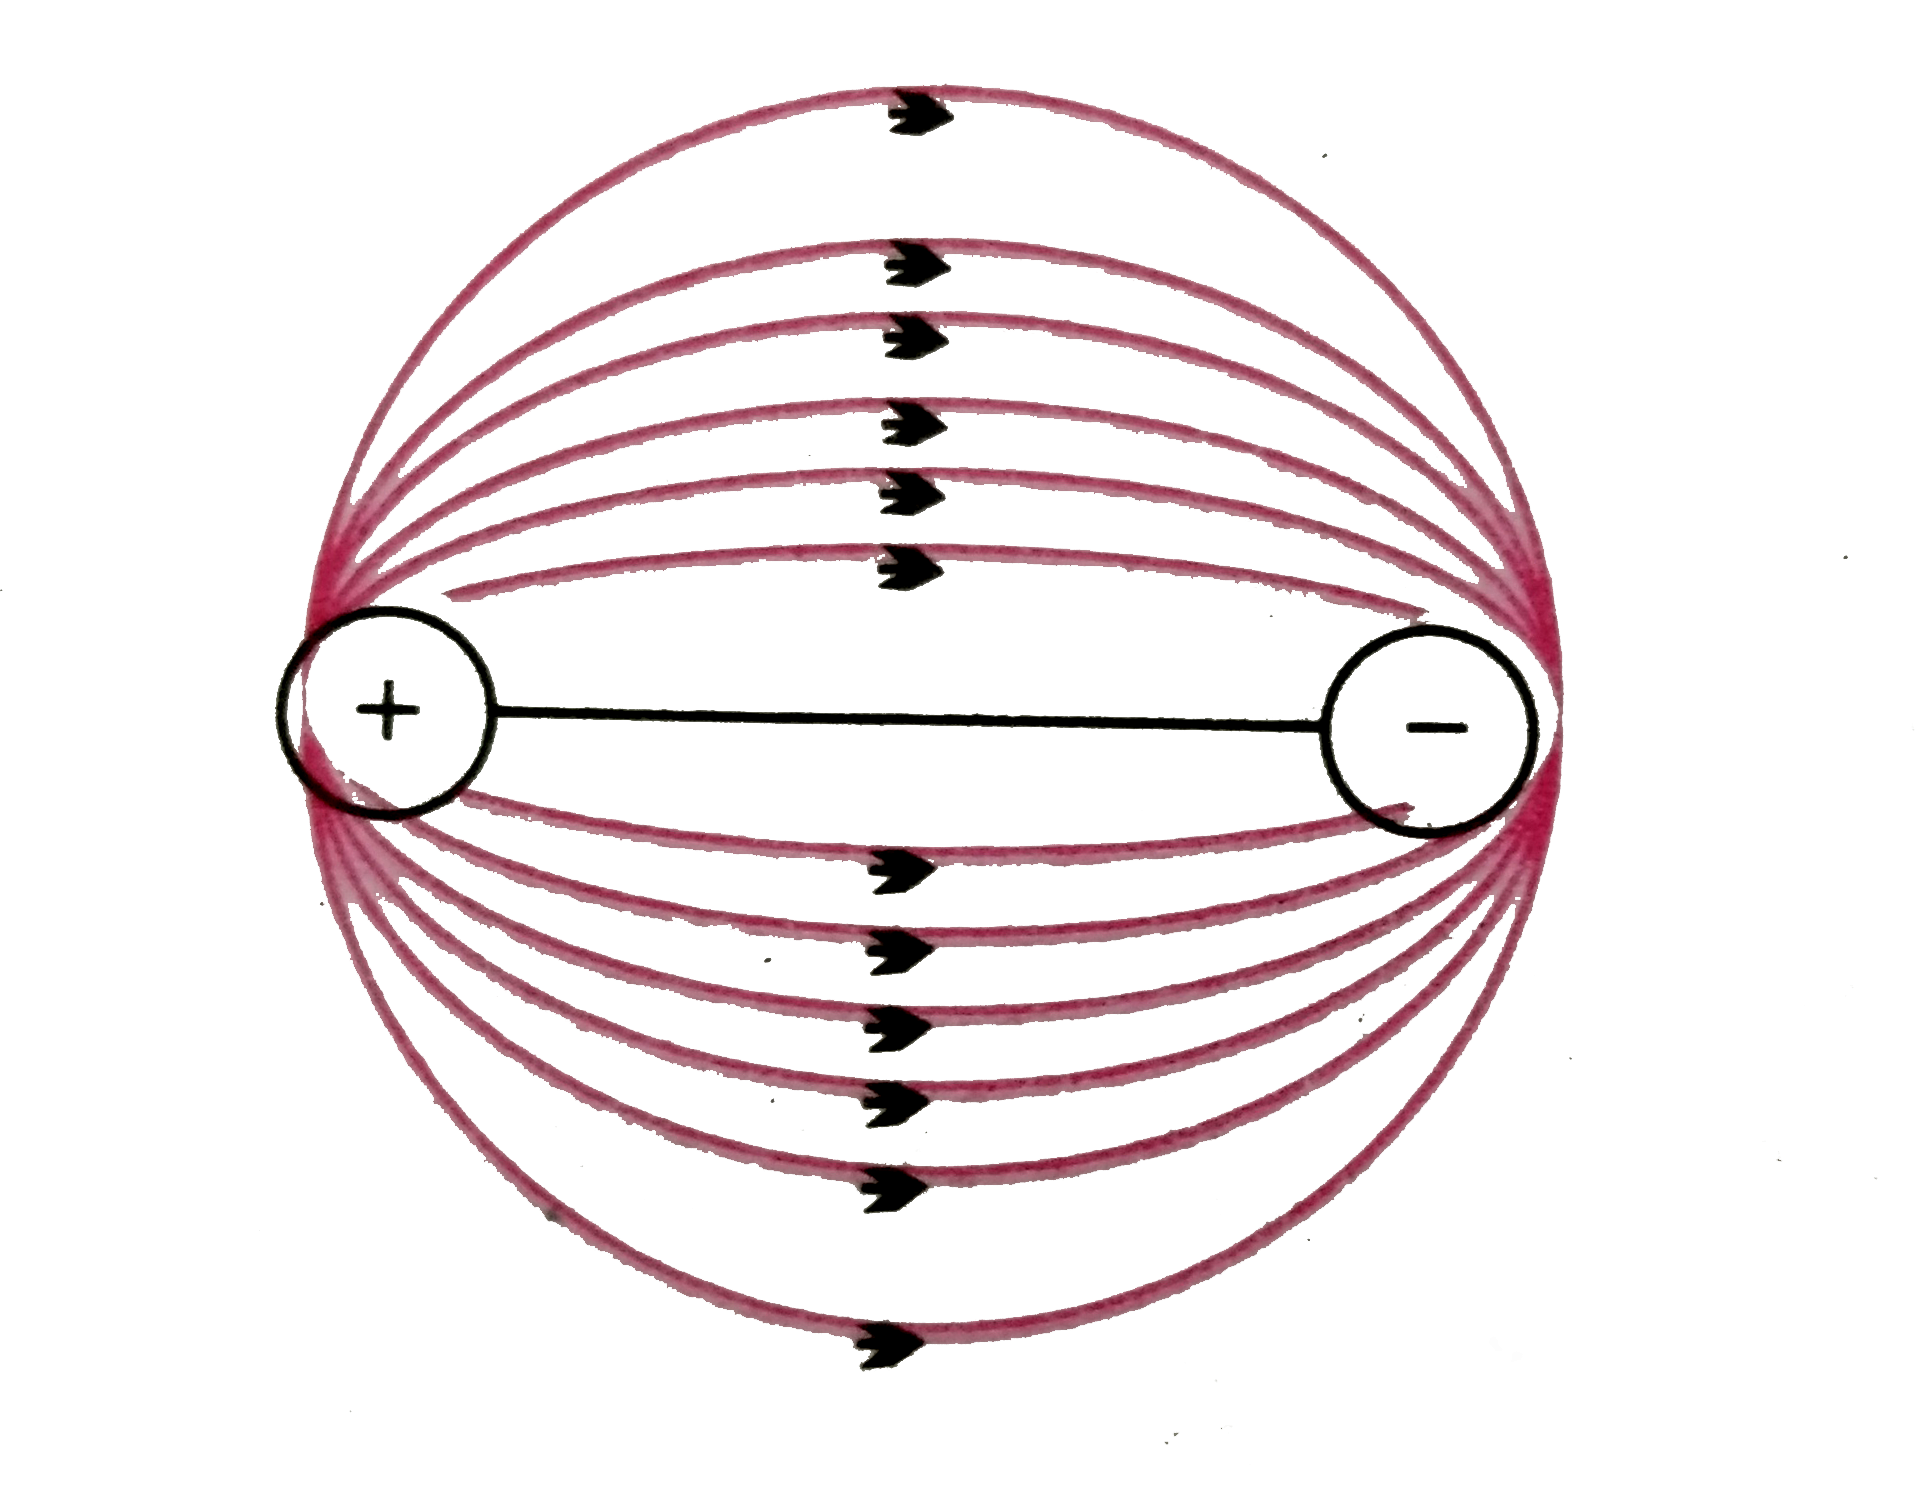 एक द्विध्रुव एक गोले के व्यास पर इस प्रकार रखा जाता है की वह ठीक गोले की सतह को स्पर्श करता हो तो निकलने वाली बल रेखाओं की प्रकृति क्या होगी ?